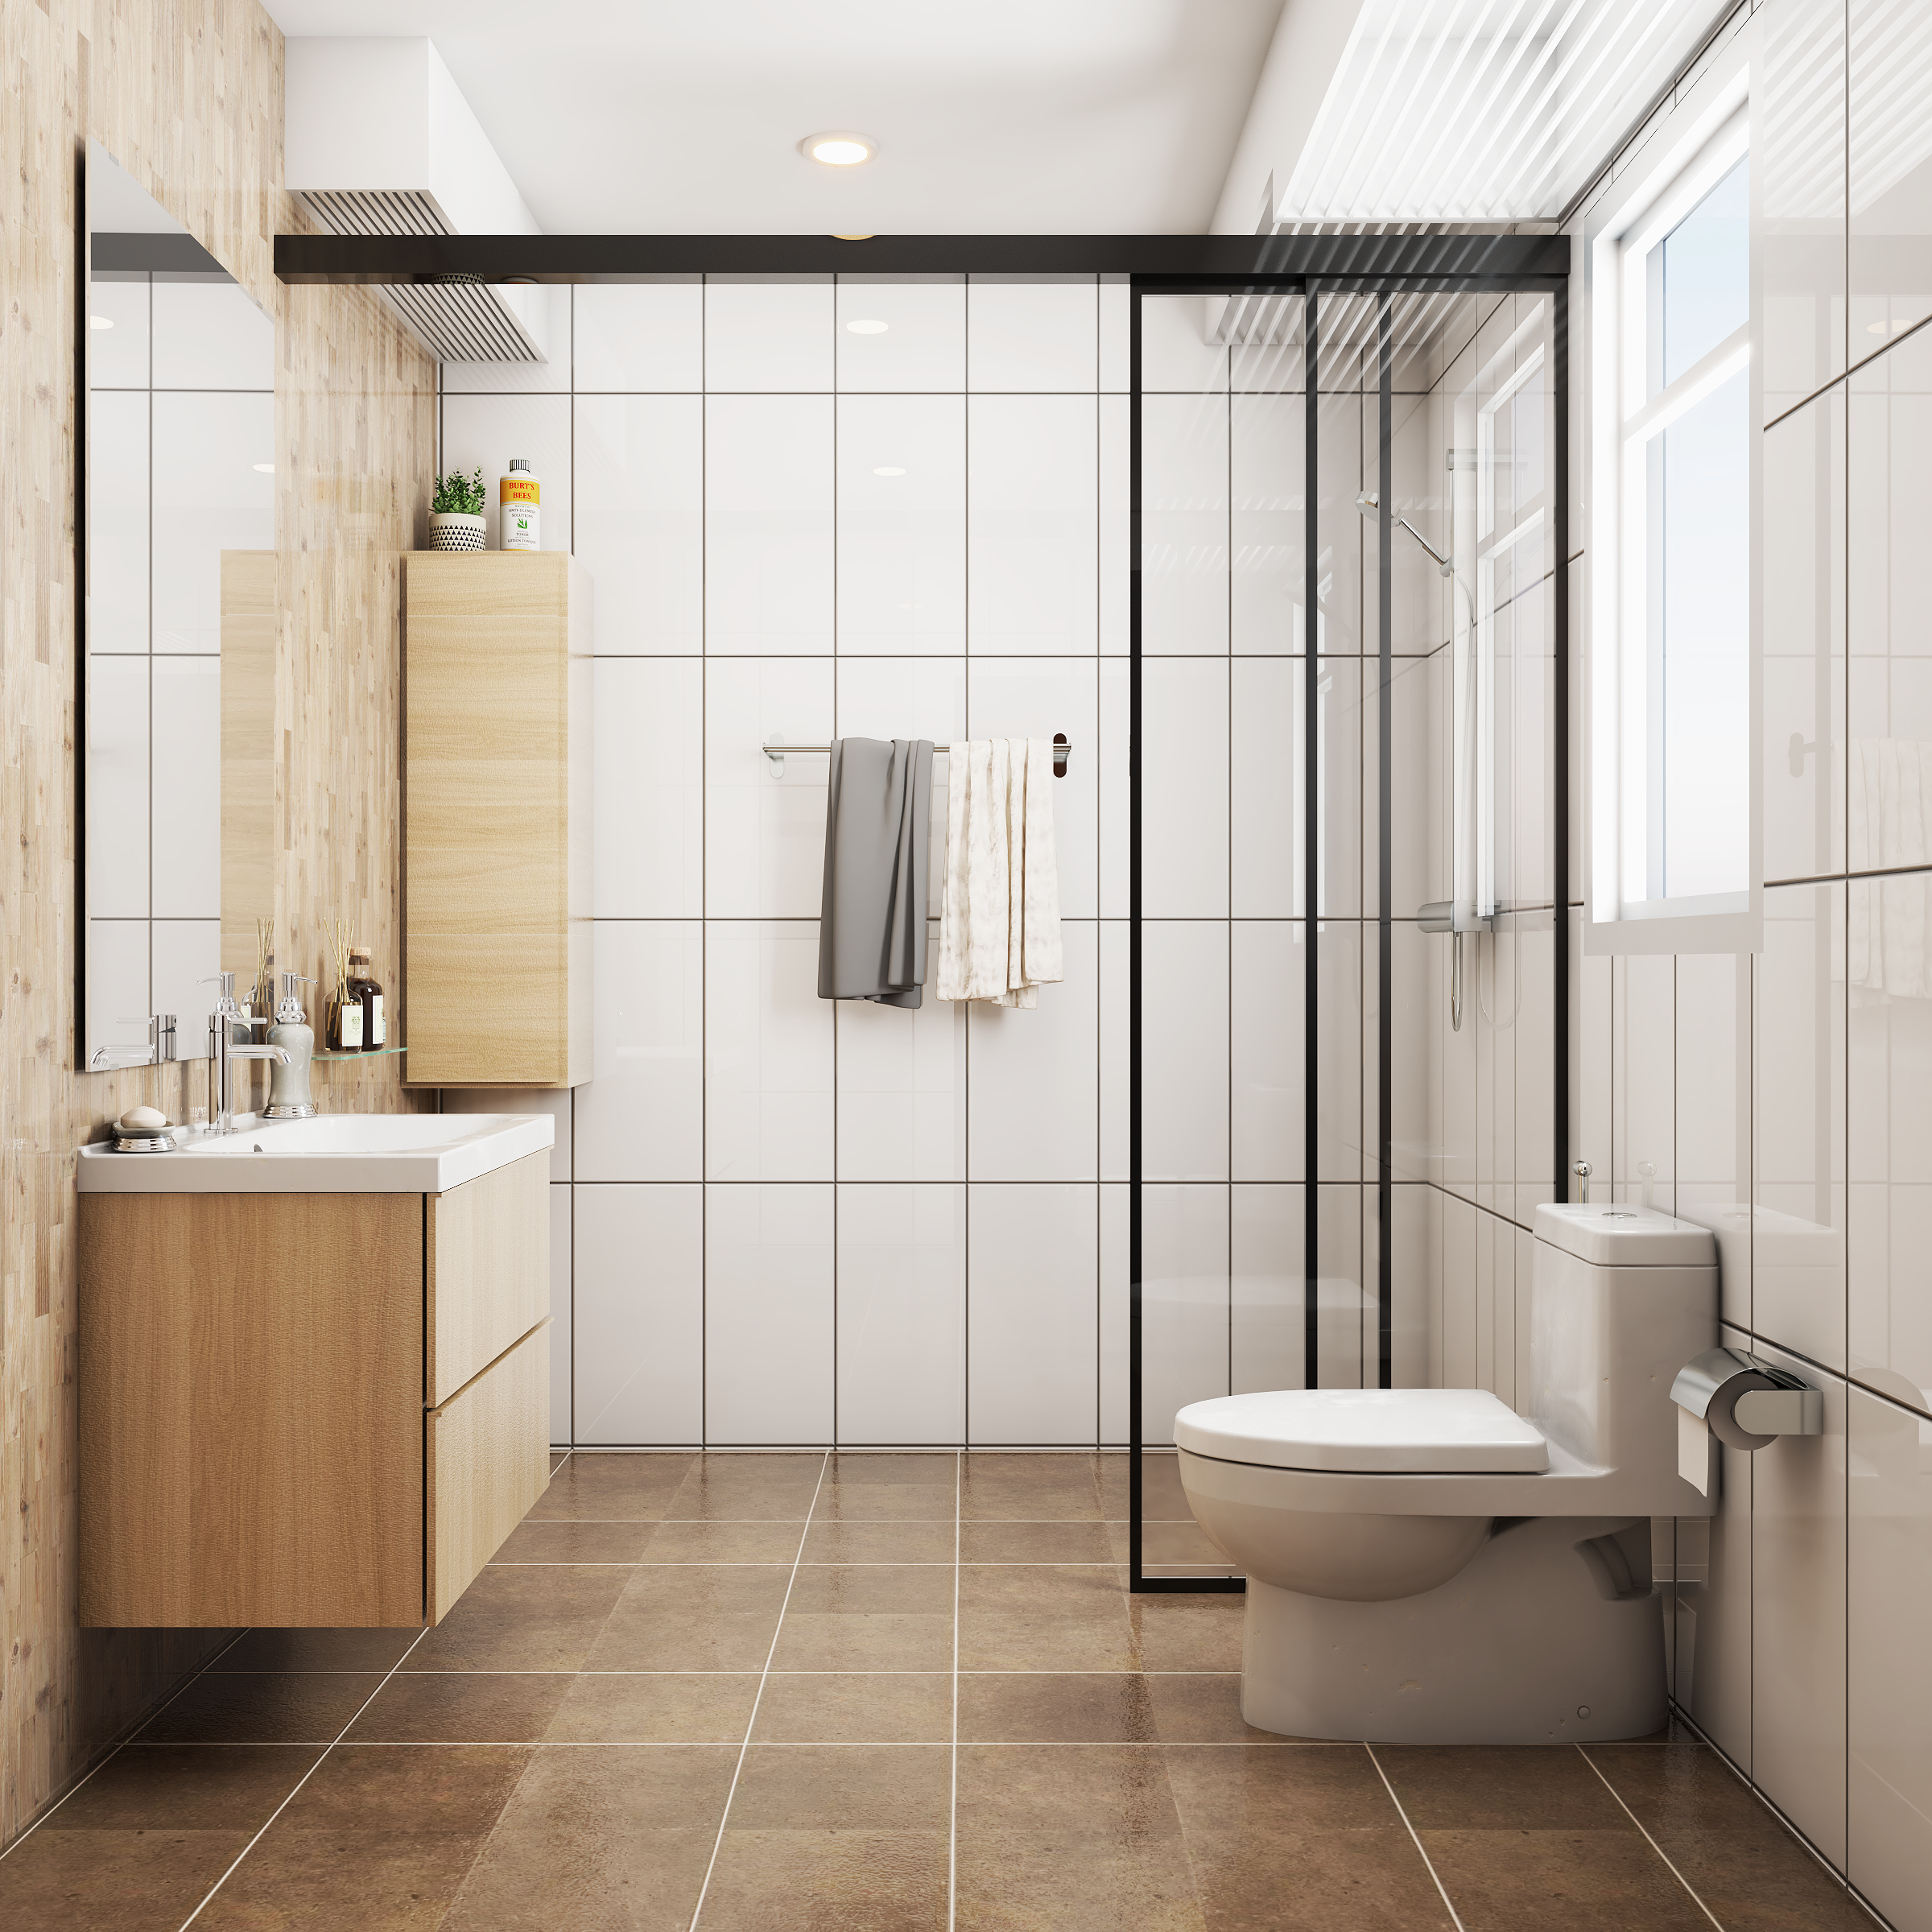 Modern White Tiles Design For Bathroom Walls